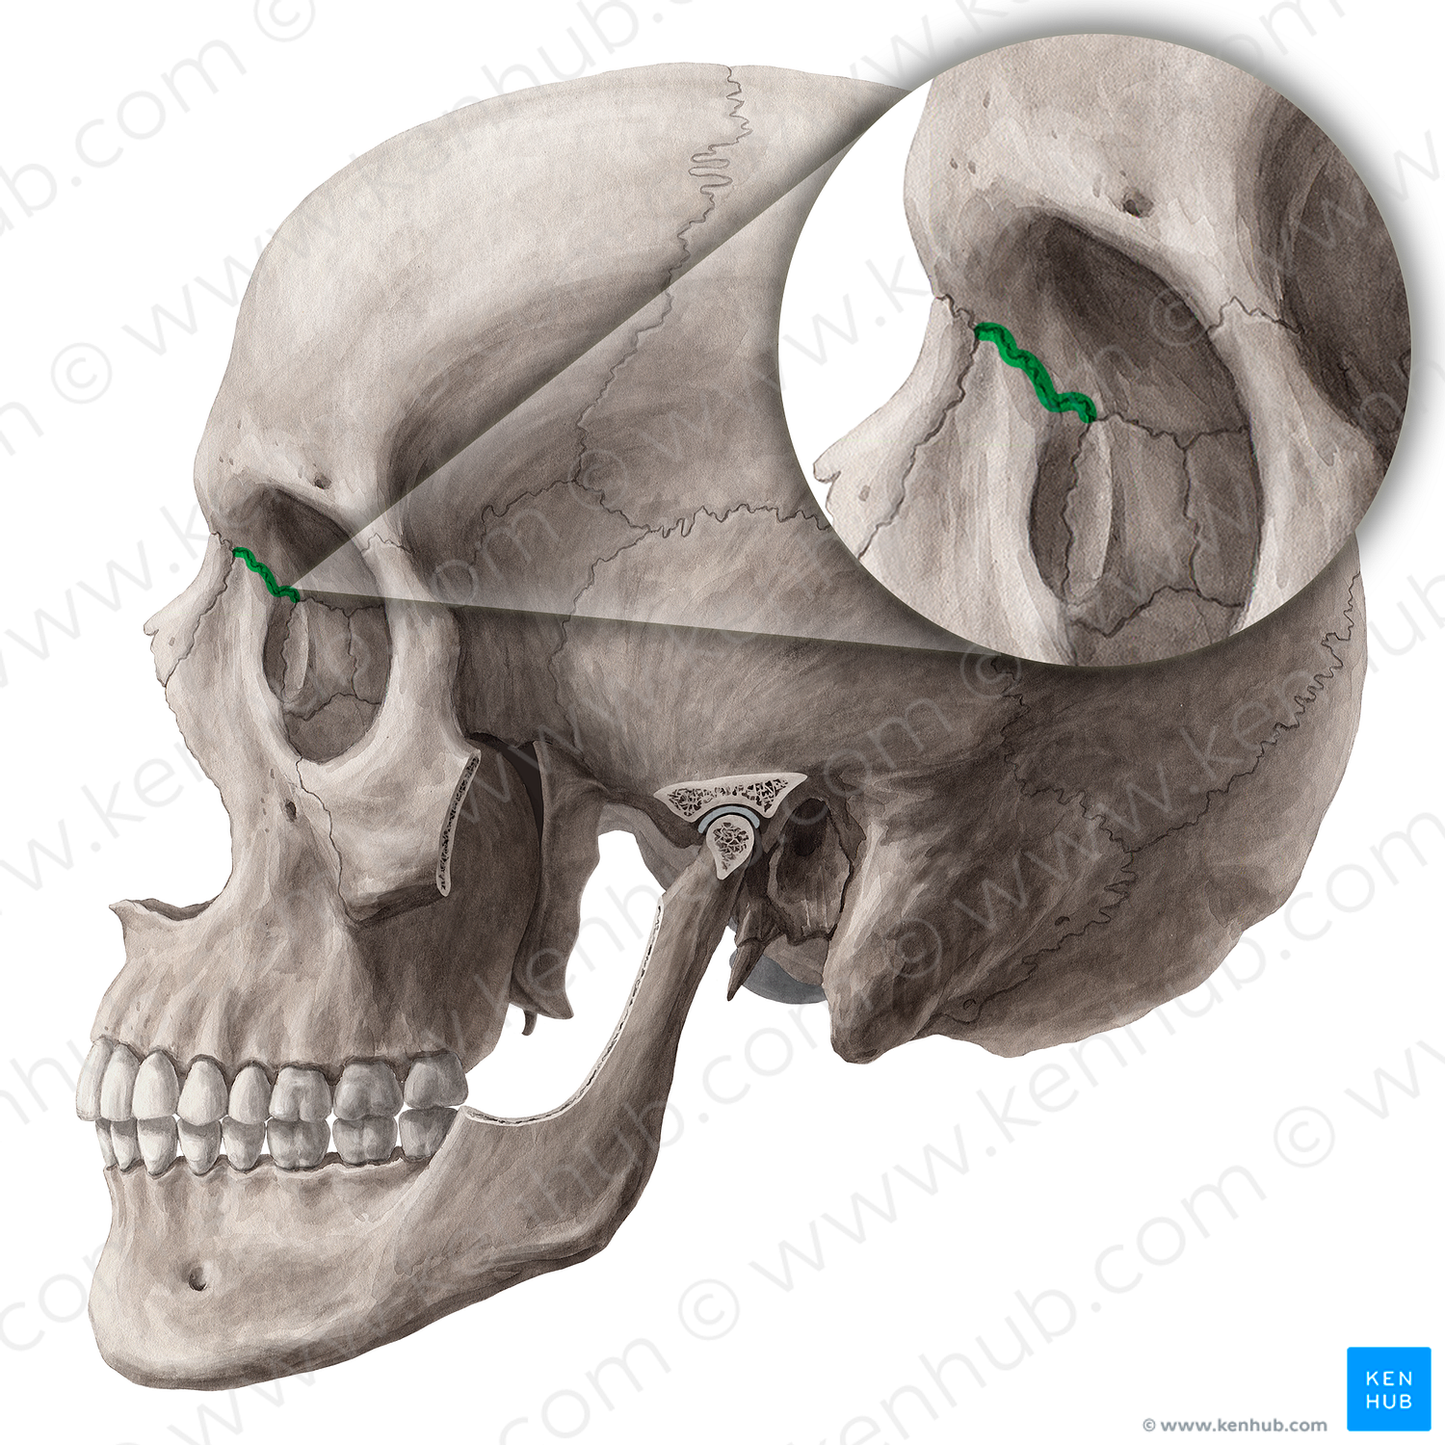 Frontomaxillary suture (#21457)